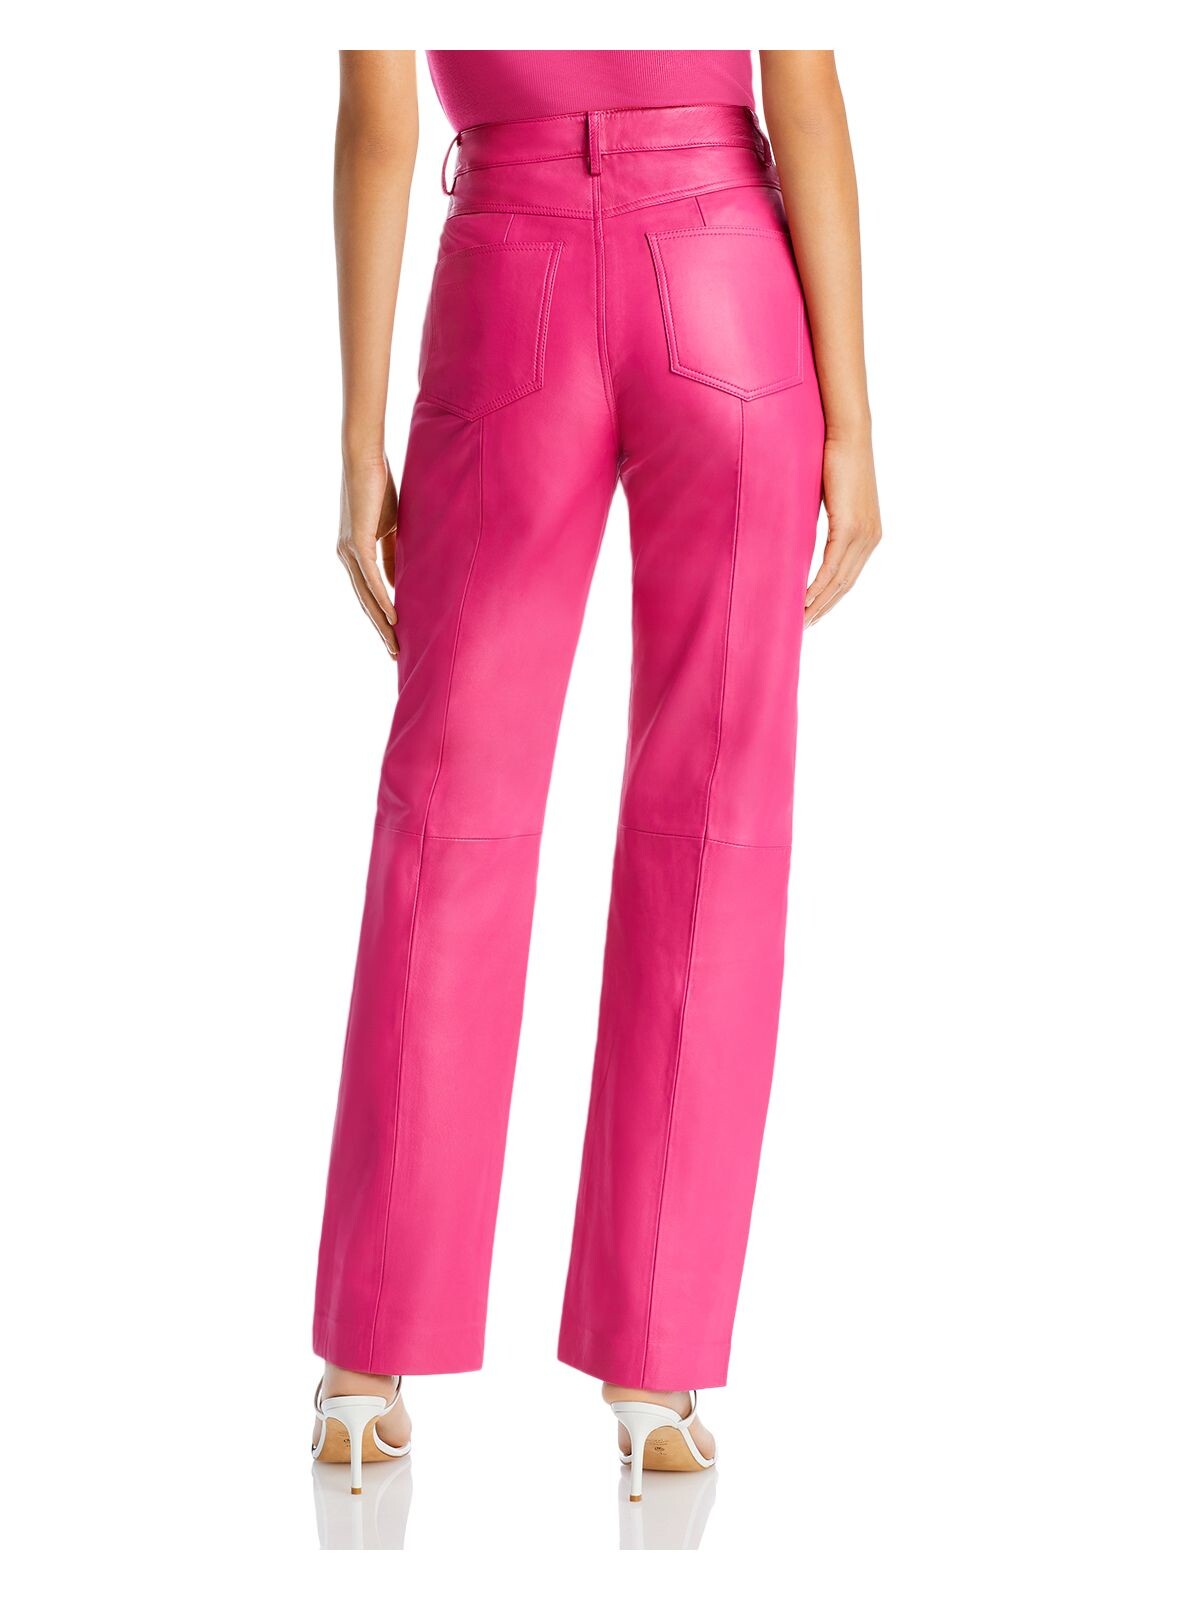 REMAIN Womens Pink Pocketed Zippered Seams At Knee Straight leg Pants 0